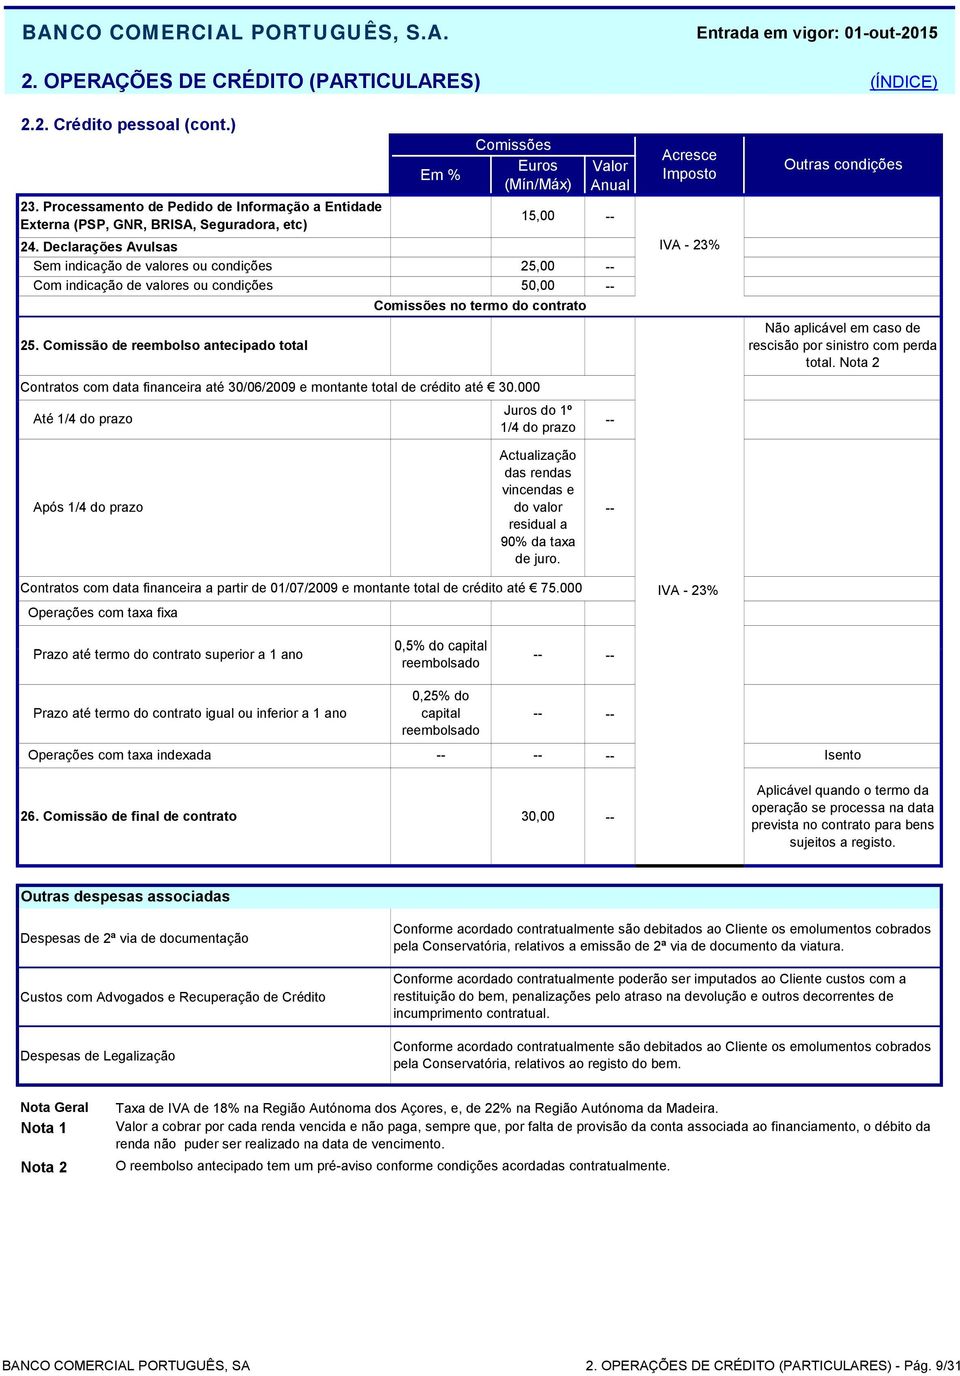 Comissão de reembolso antecipado total Até 1/4 do prazo Euros (Mín/Máx) 15,00 25,00 50,00 no termo do contrato Contratos com data financeira até 30/06/2009 e montante total de crédito até 30.